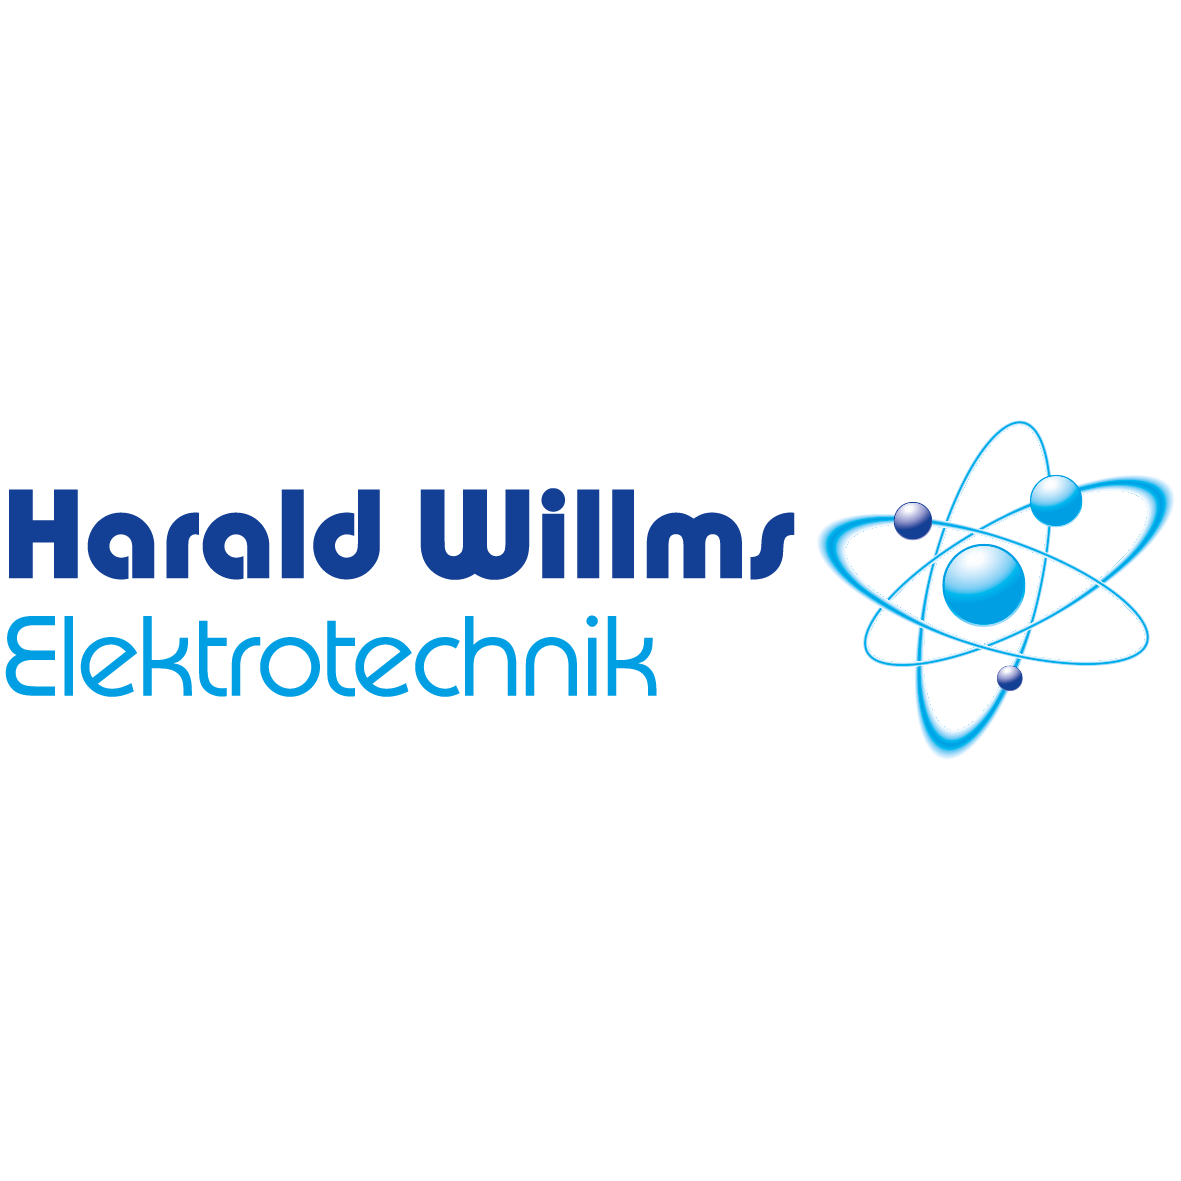 Harald Willms Elektrotechnik in Aurich in Ostfriesland - Logo